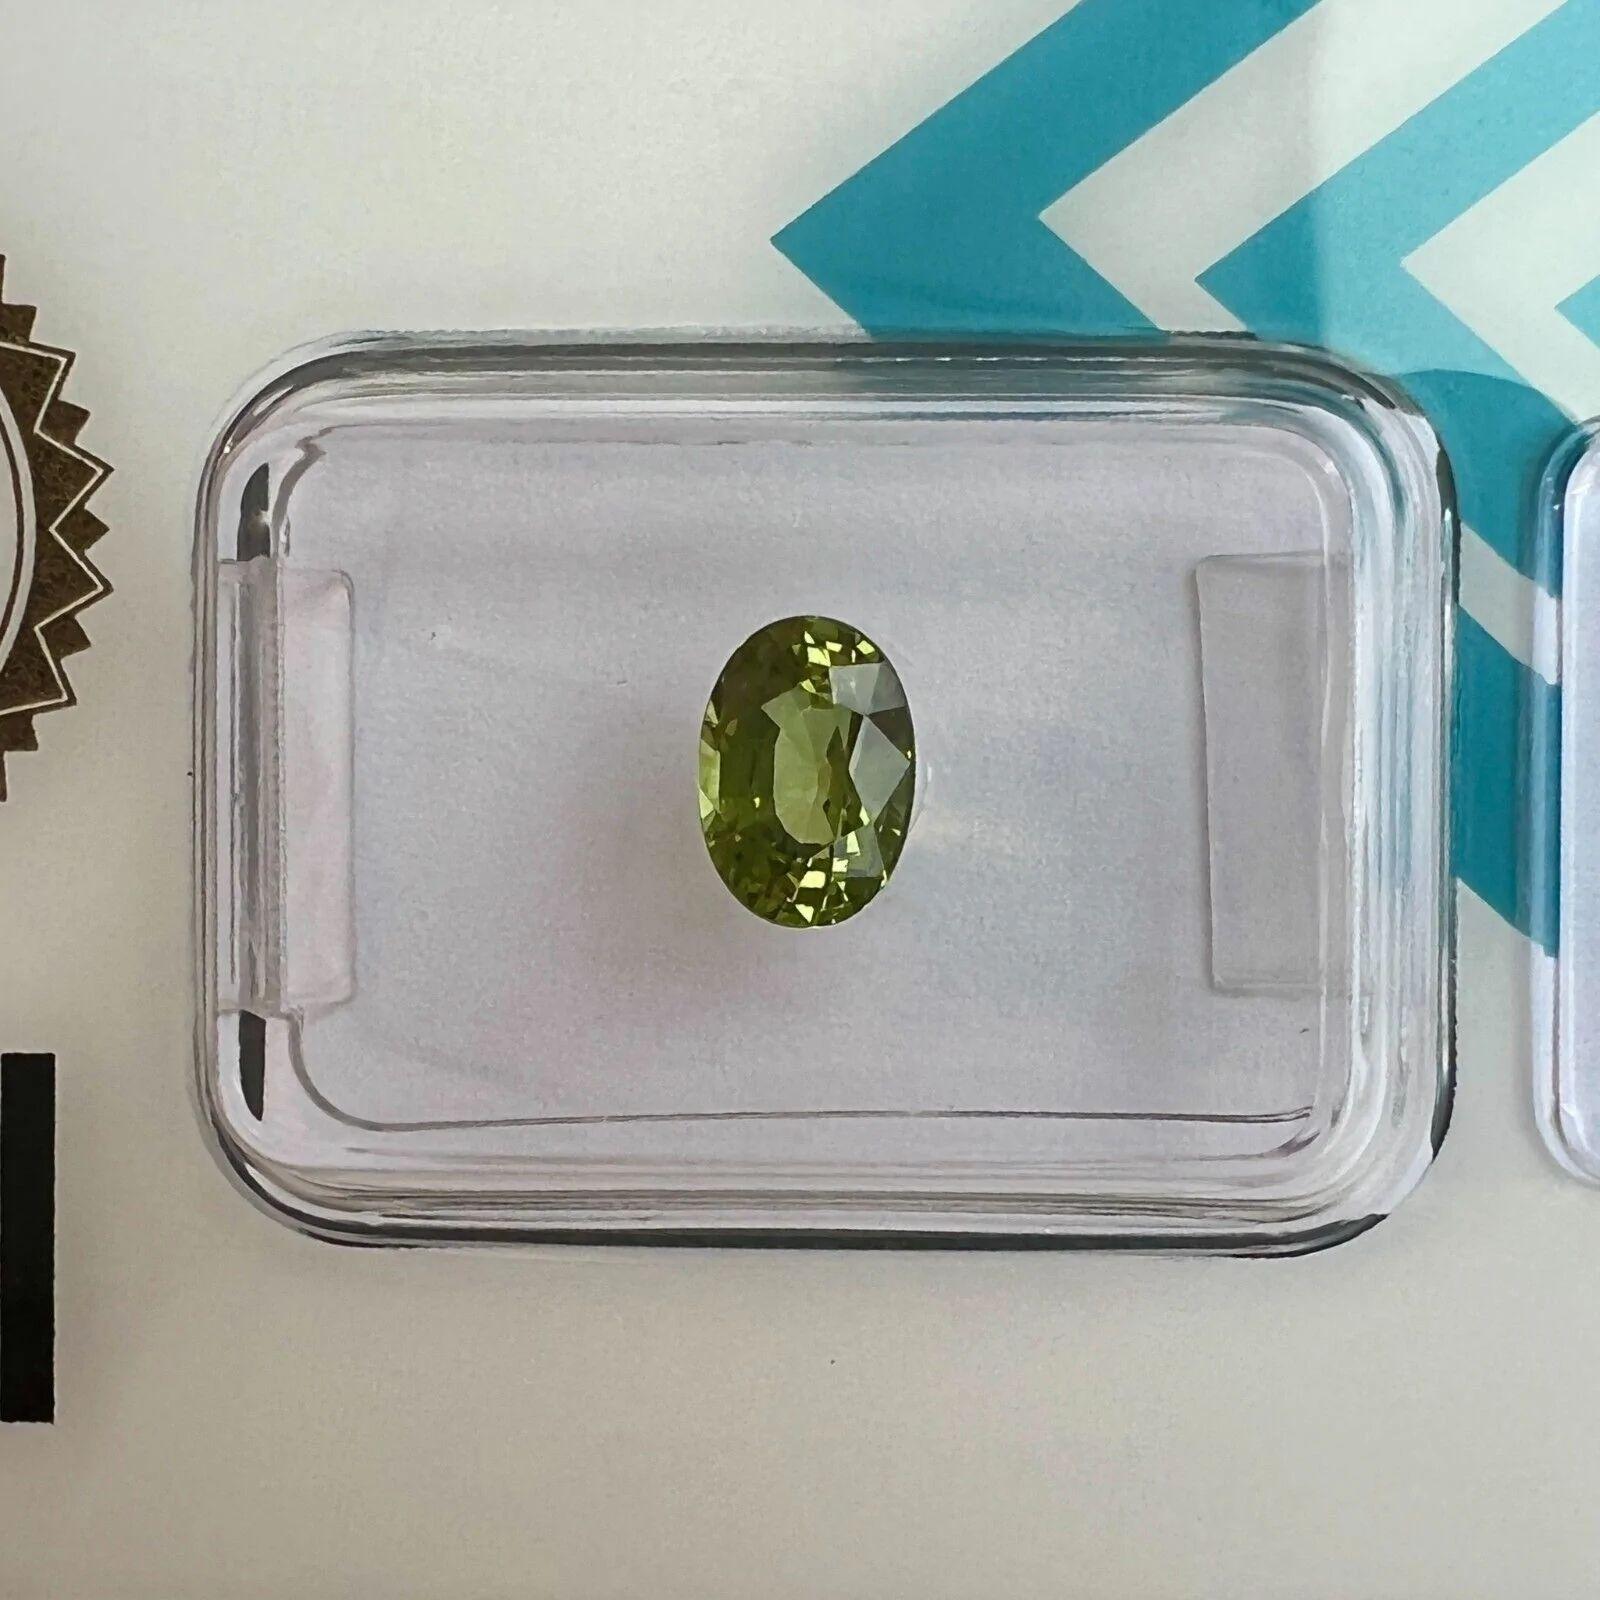 1.05ct Lebendig Grün Oval Schliff Saphir Unbehandelt Selten IGI Zertifiziert Blister

Lebendiger grüner Saphir im Ovalschliff ohne Hitze im IGI-Blister.
1,05 Karat mit einer feinen lebhaften grünen Farbe, einem ausgezeichneten ovalen Schliff und